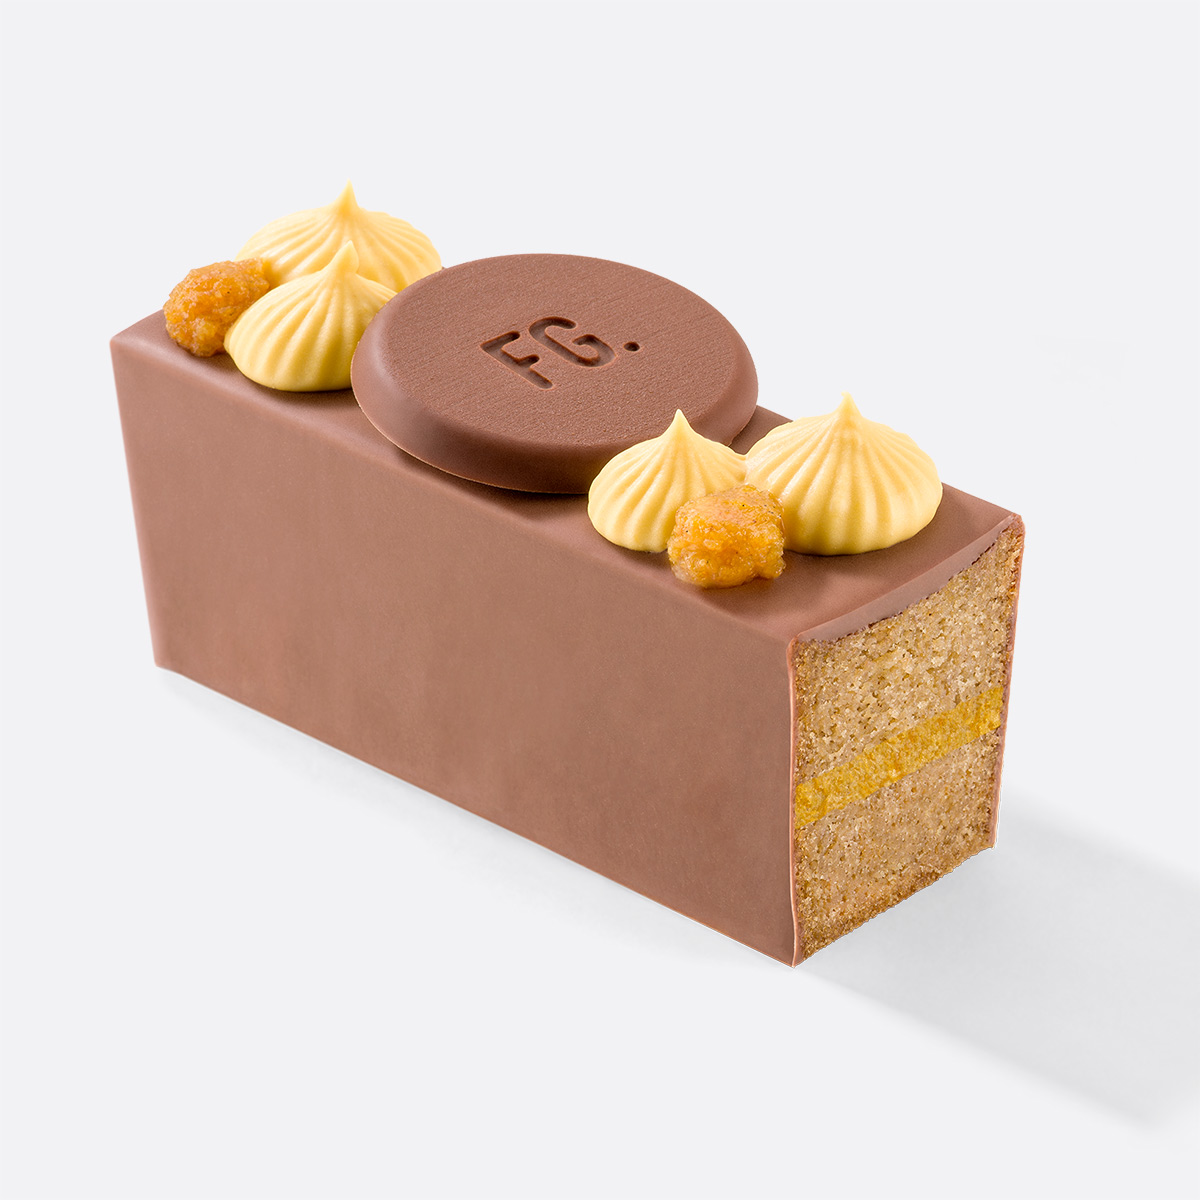 https://fabricegillotte.com/35-les-cakes-cakes-moelleux-au-coeurs-fondant/-164#/72-saveurs_des_cakes-chocolat